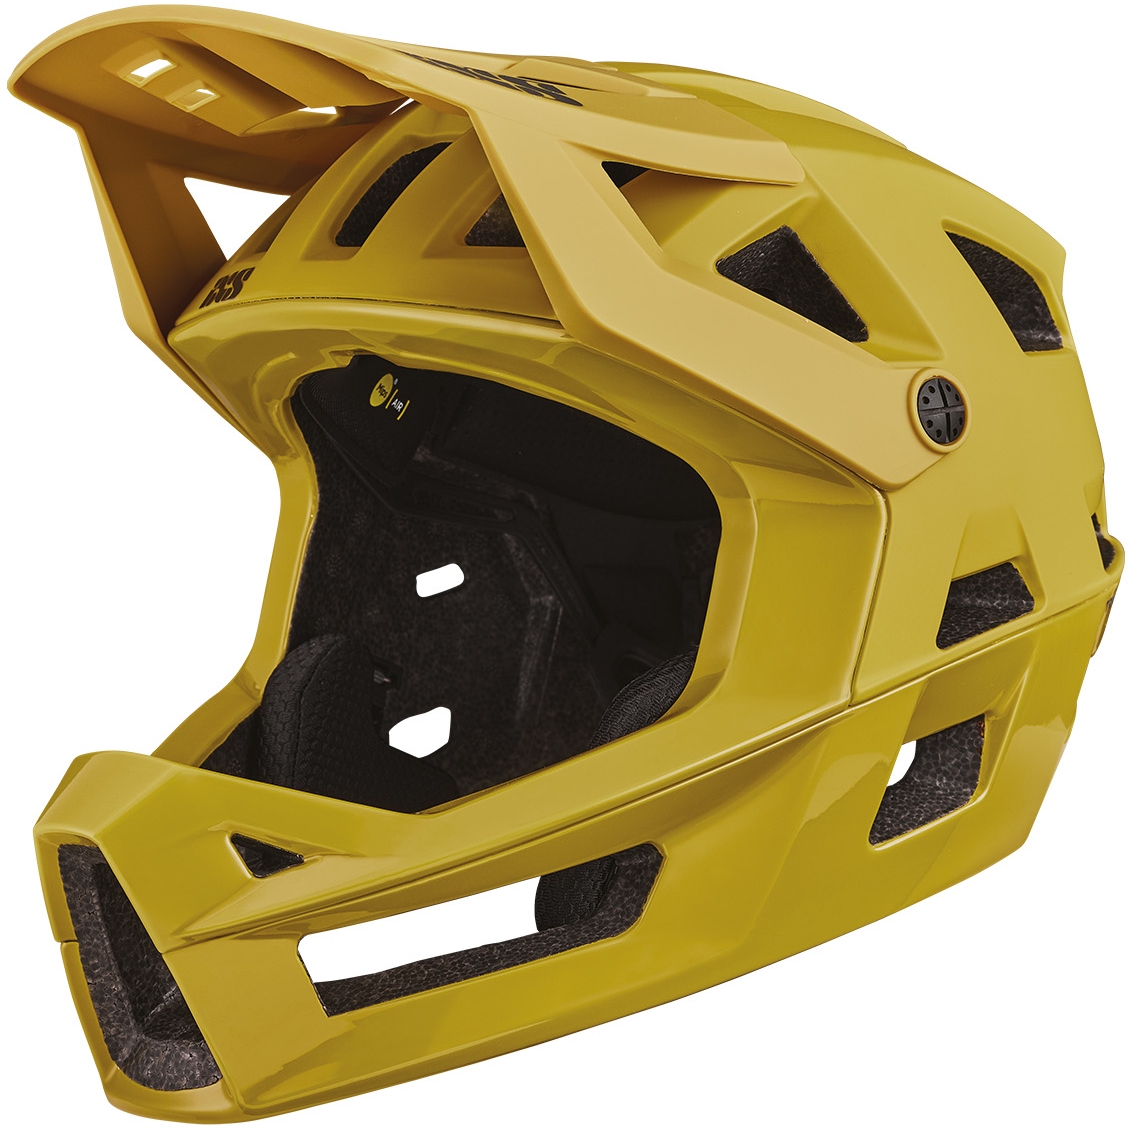 Productfoto van iXS Trigger Full Face MIPS Helm - acacia